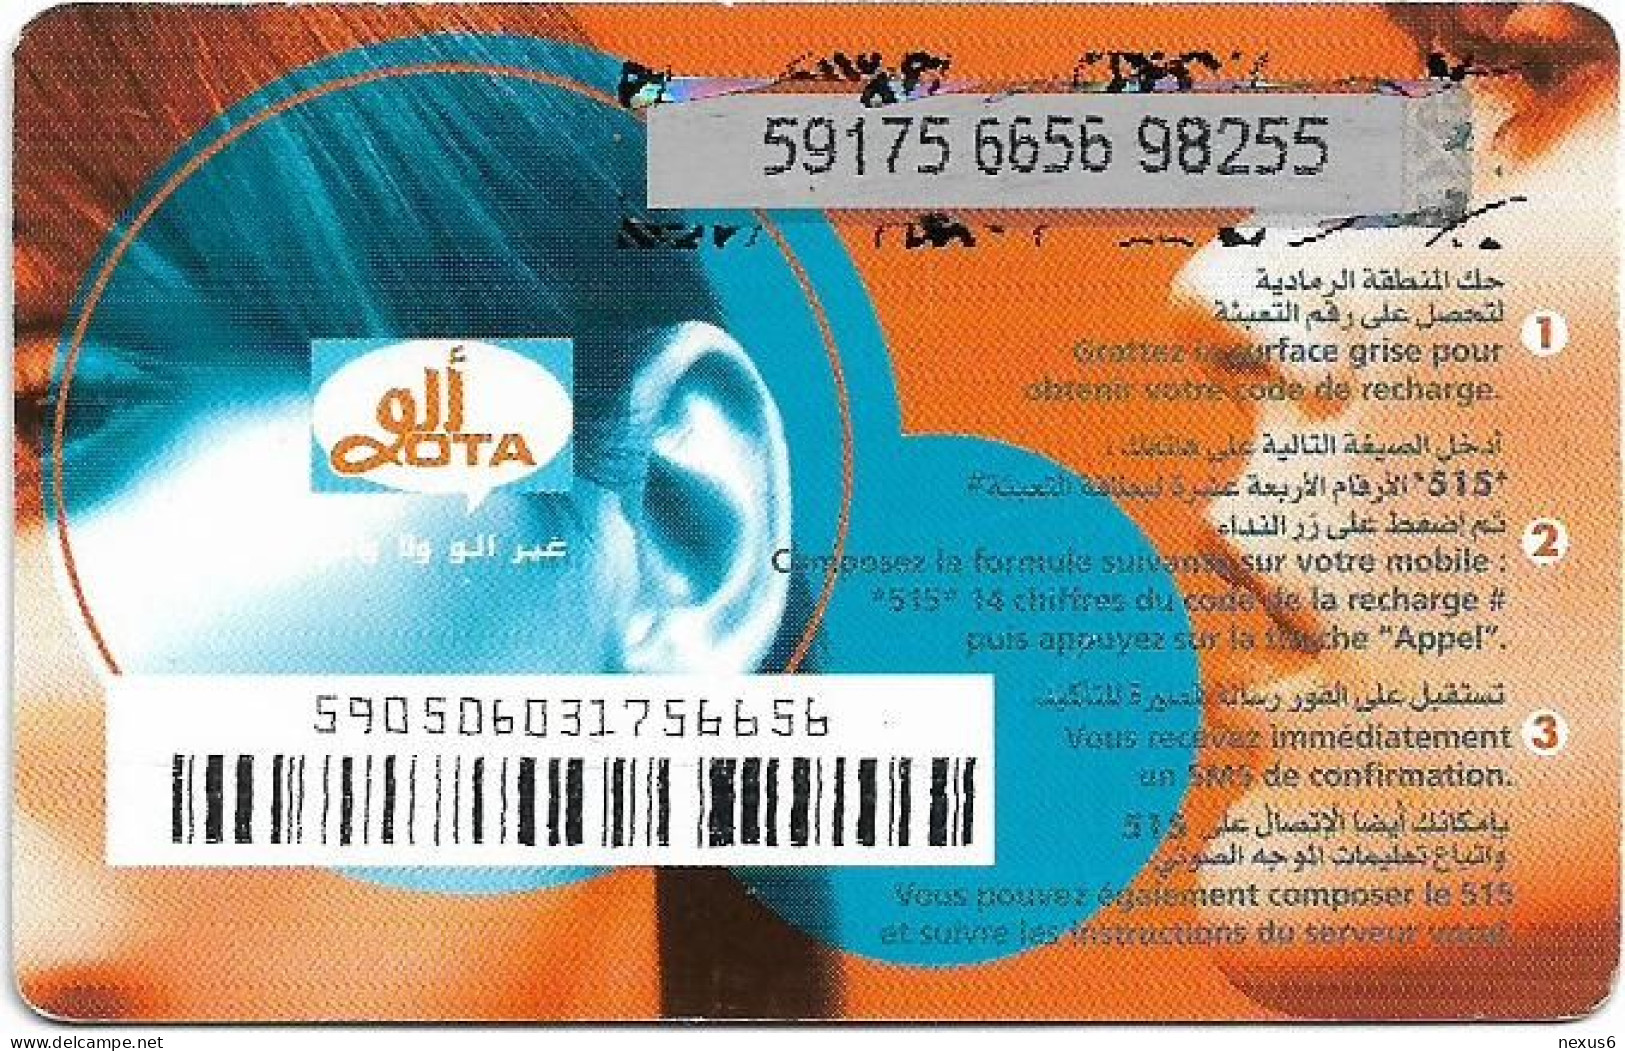 Algeria - Allo OTA - Allo OTA Blue 2 (Grey PIN Background), GSM Refill 500DA, Used - Argelia